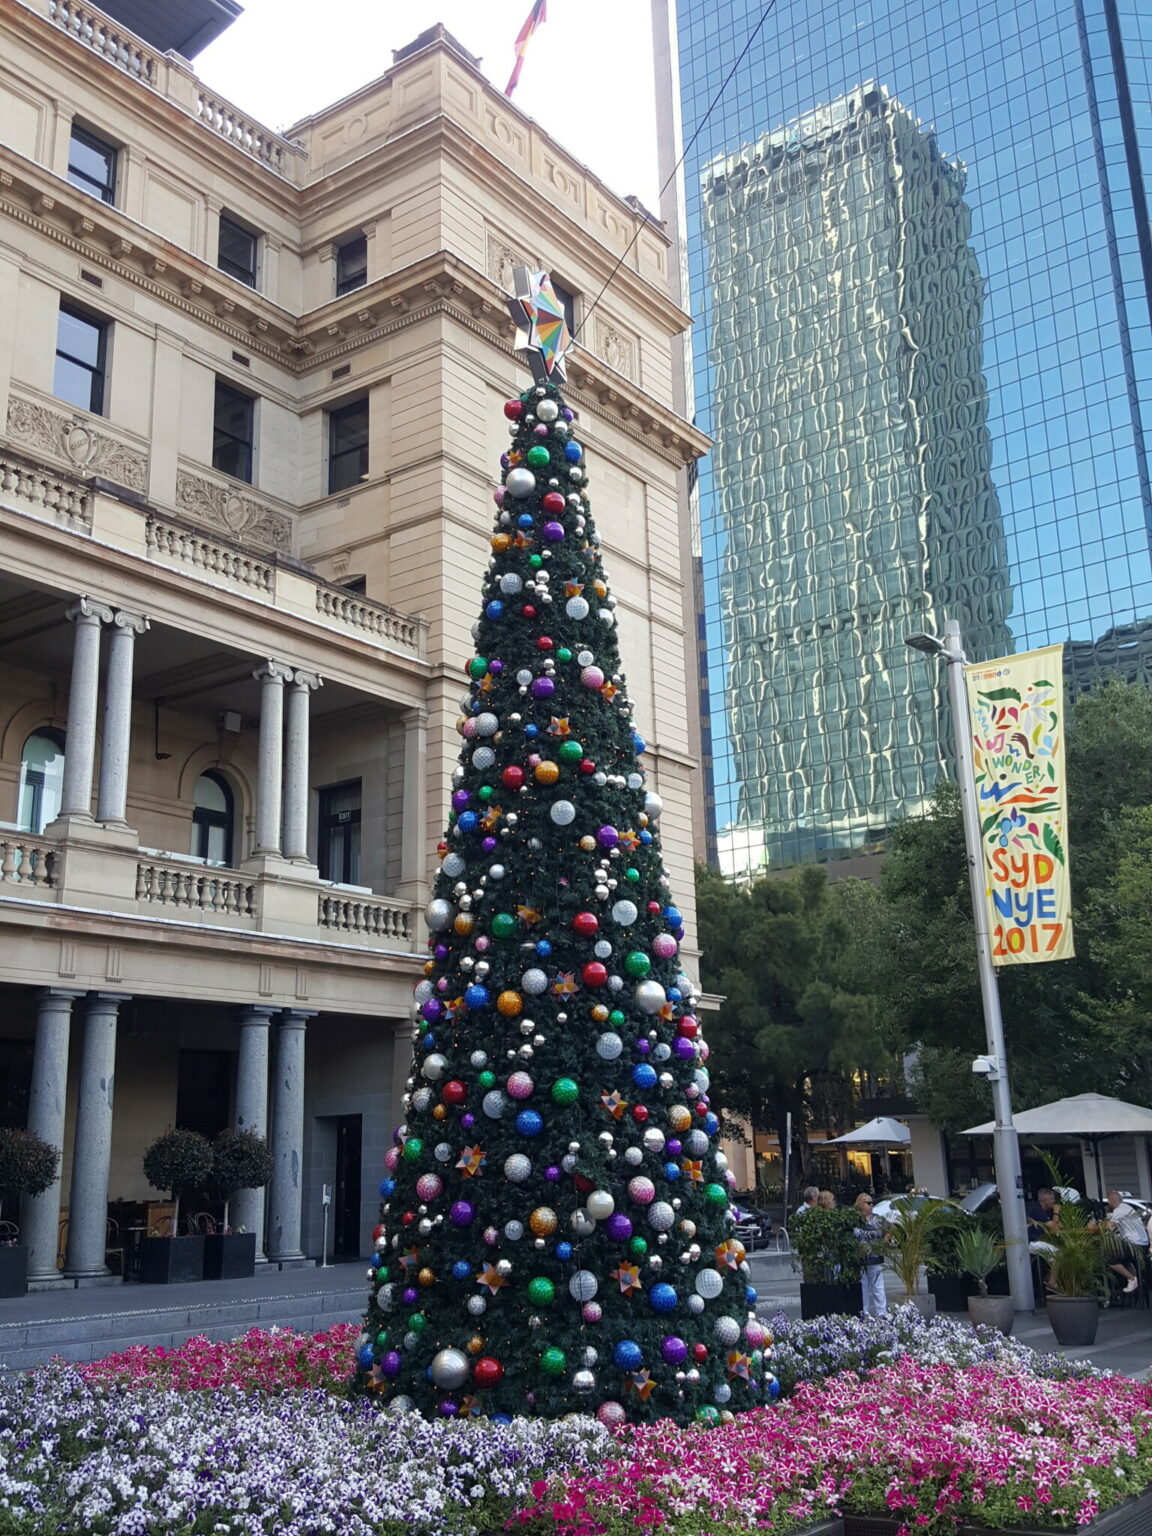 Weihnachtsbaum vor dem Customs House in Sydney 2017 © Sonja Blaschke